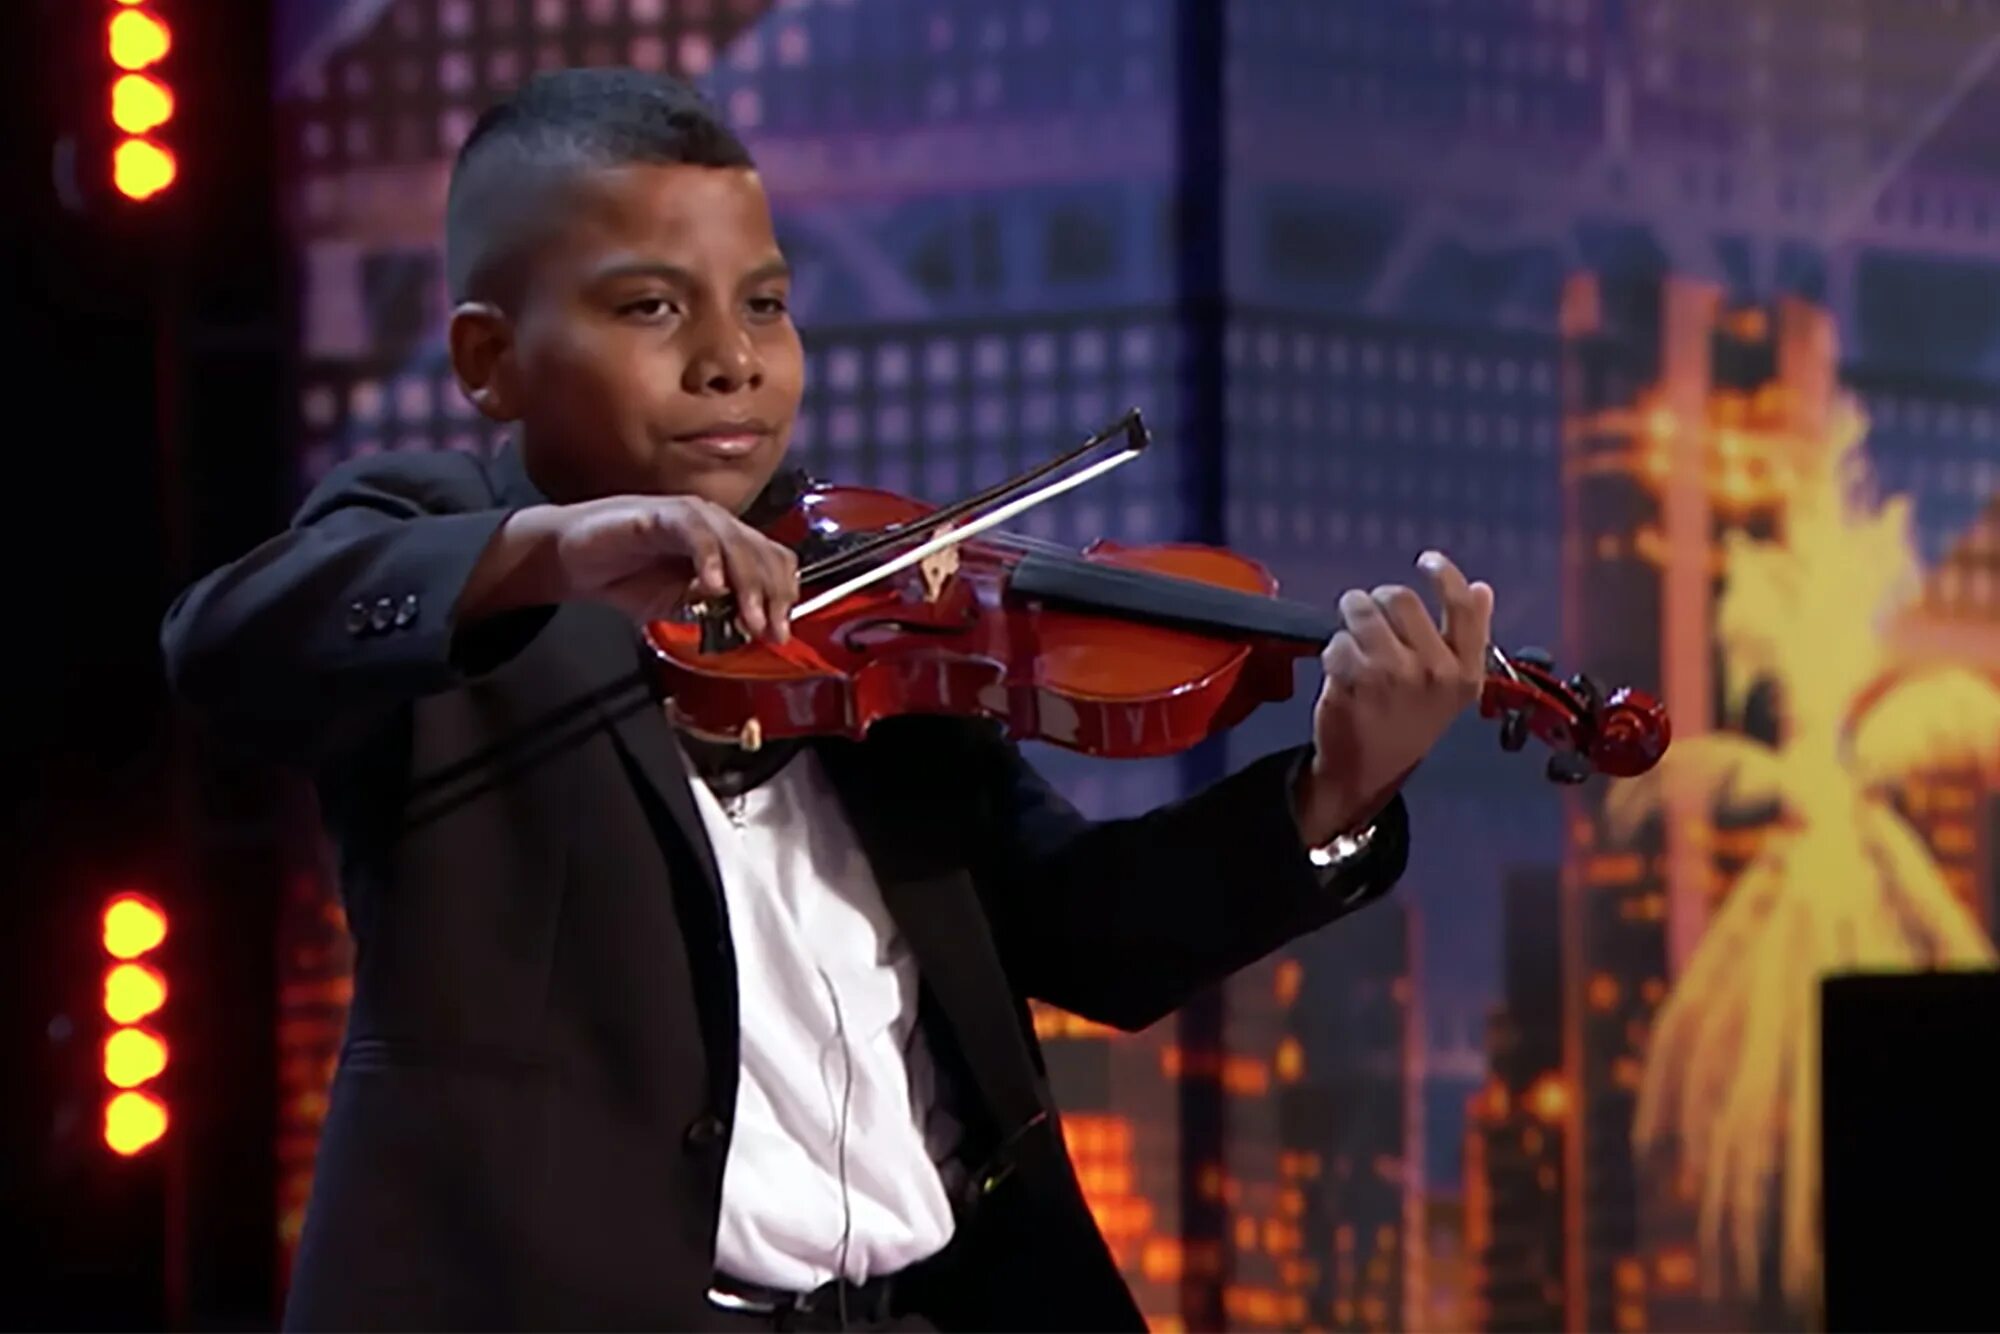 Мальчик поет про. Тайлер Батлер Фигероа. Мальчик поет на сцене. Самый маленький скрипач в мире. Шоу талантов скрипач.